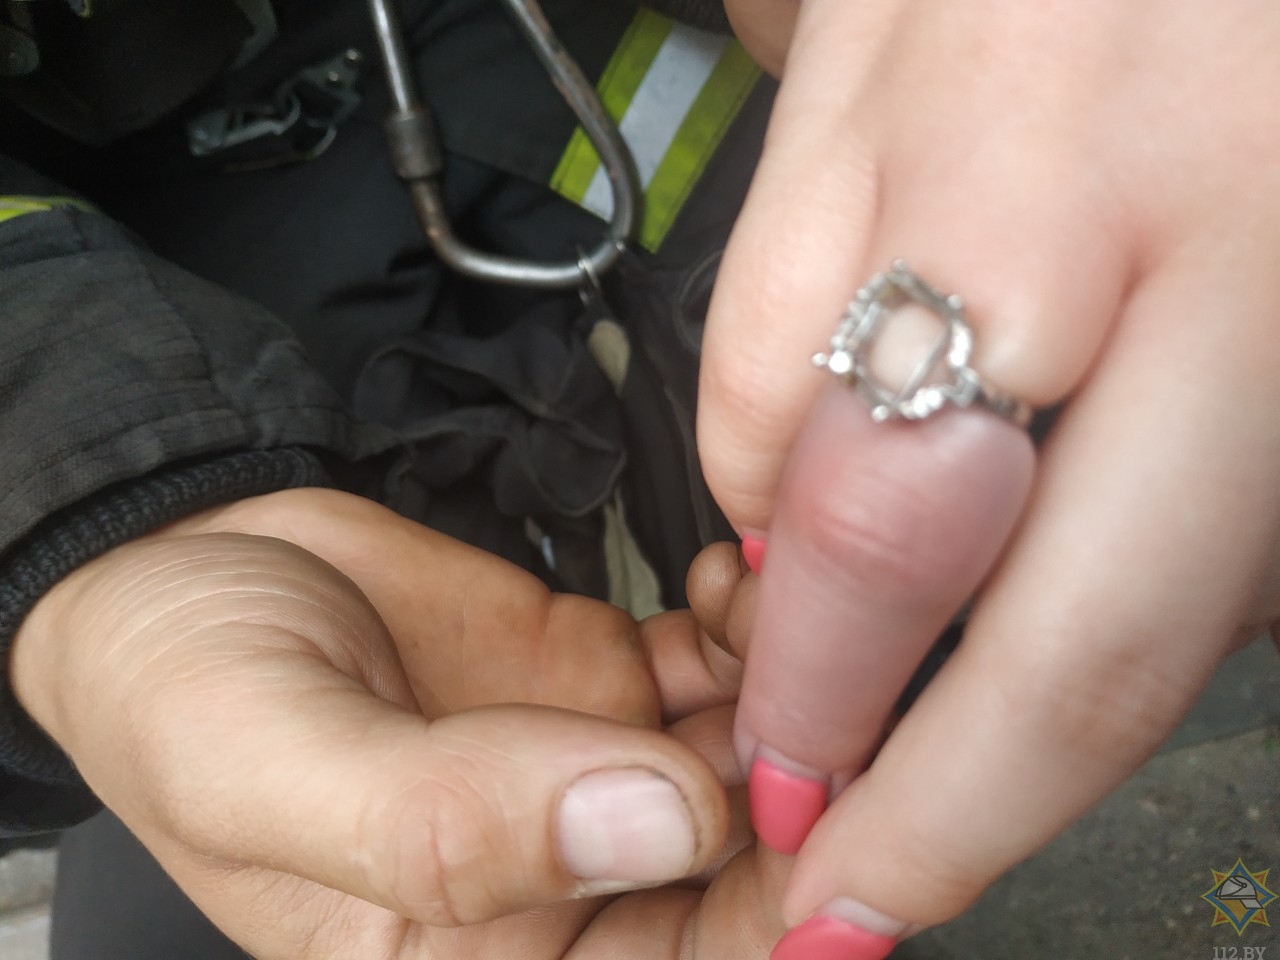 кольцо на большом пальце геи фото 99